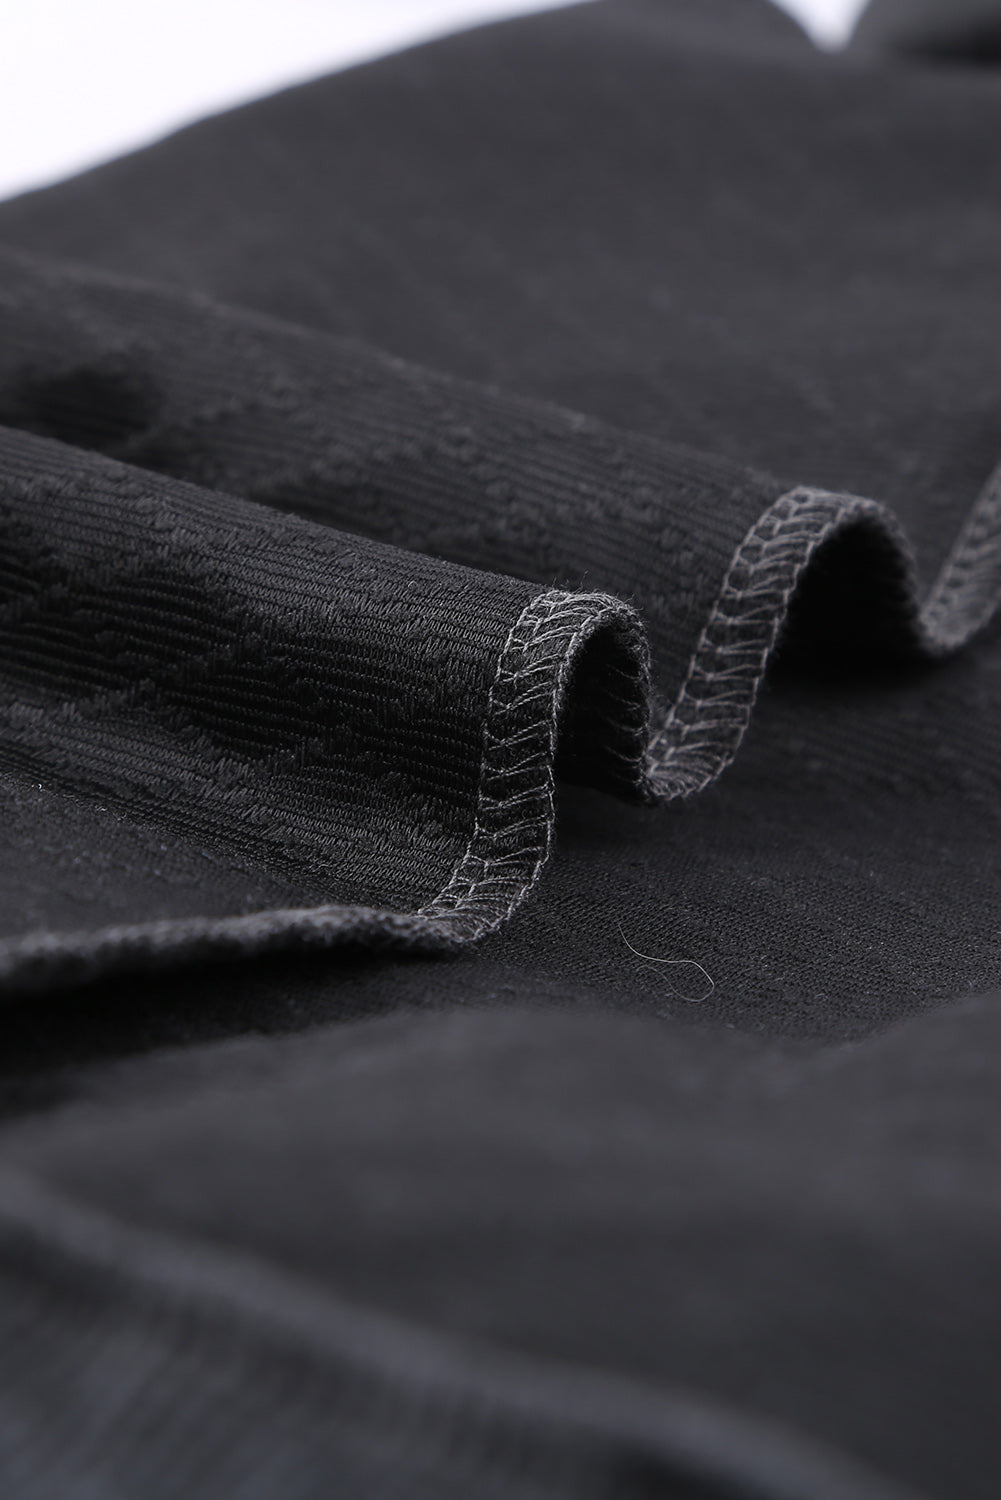 Sweat-shirt gris matelassé à boutons-pression et col montant avec fausse poche avant